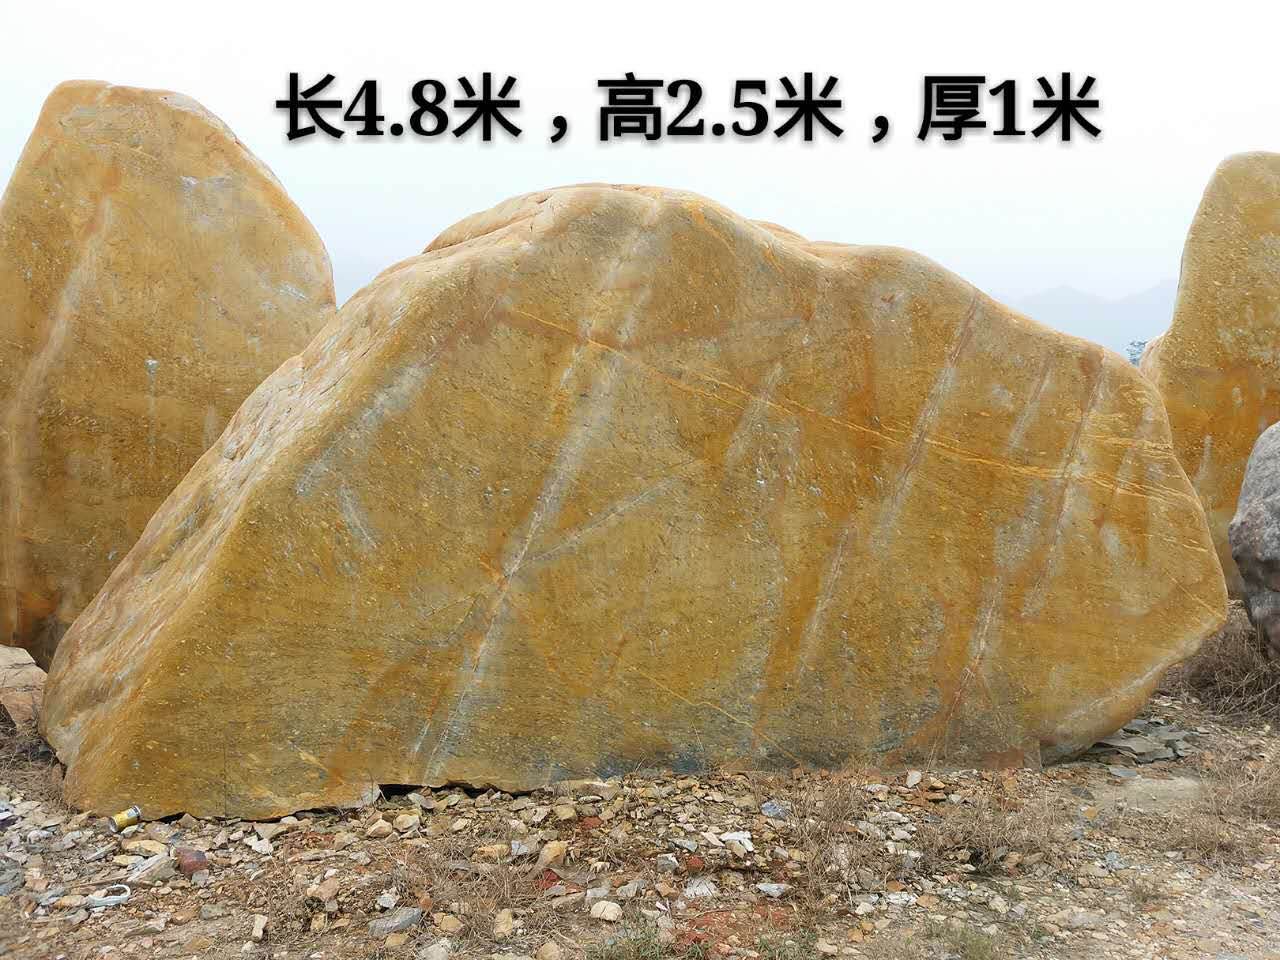 上海市景观石 公园园林风景石 天然企业公司招牌石刻字石